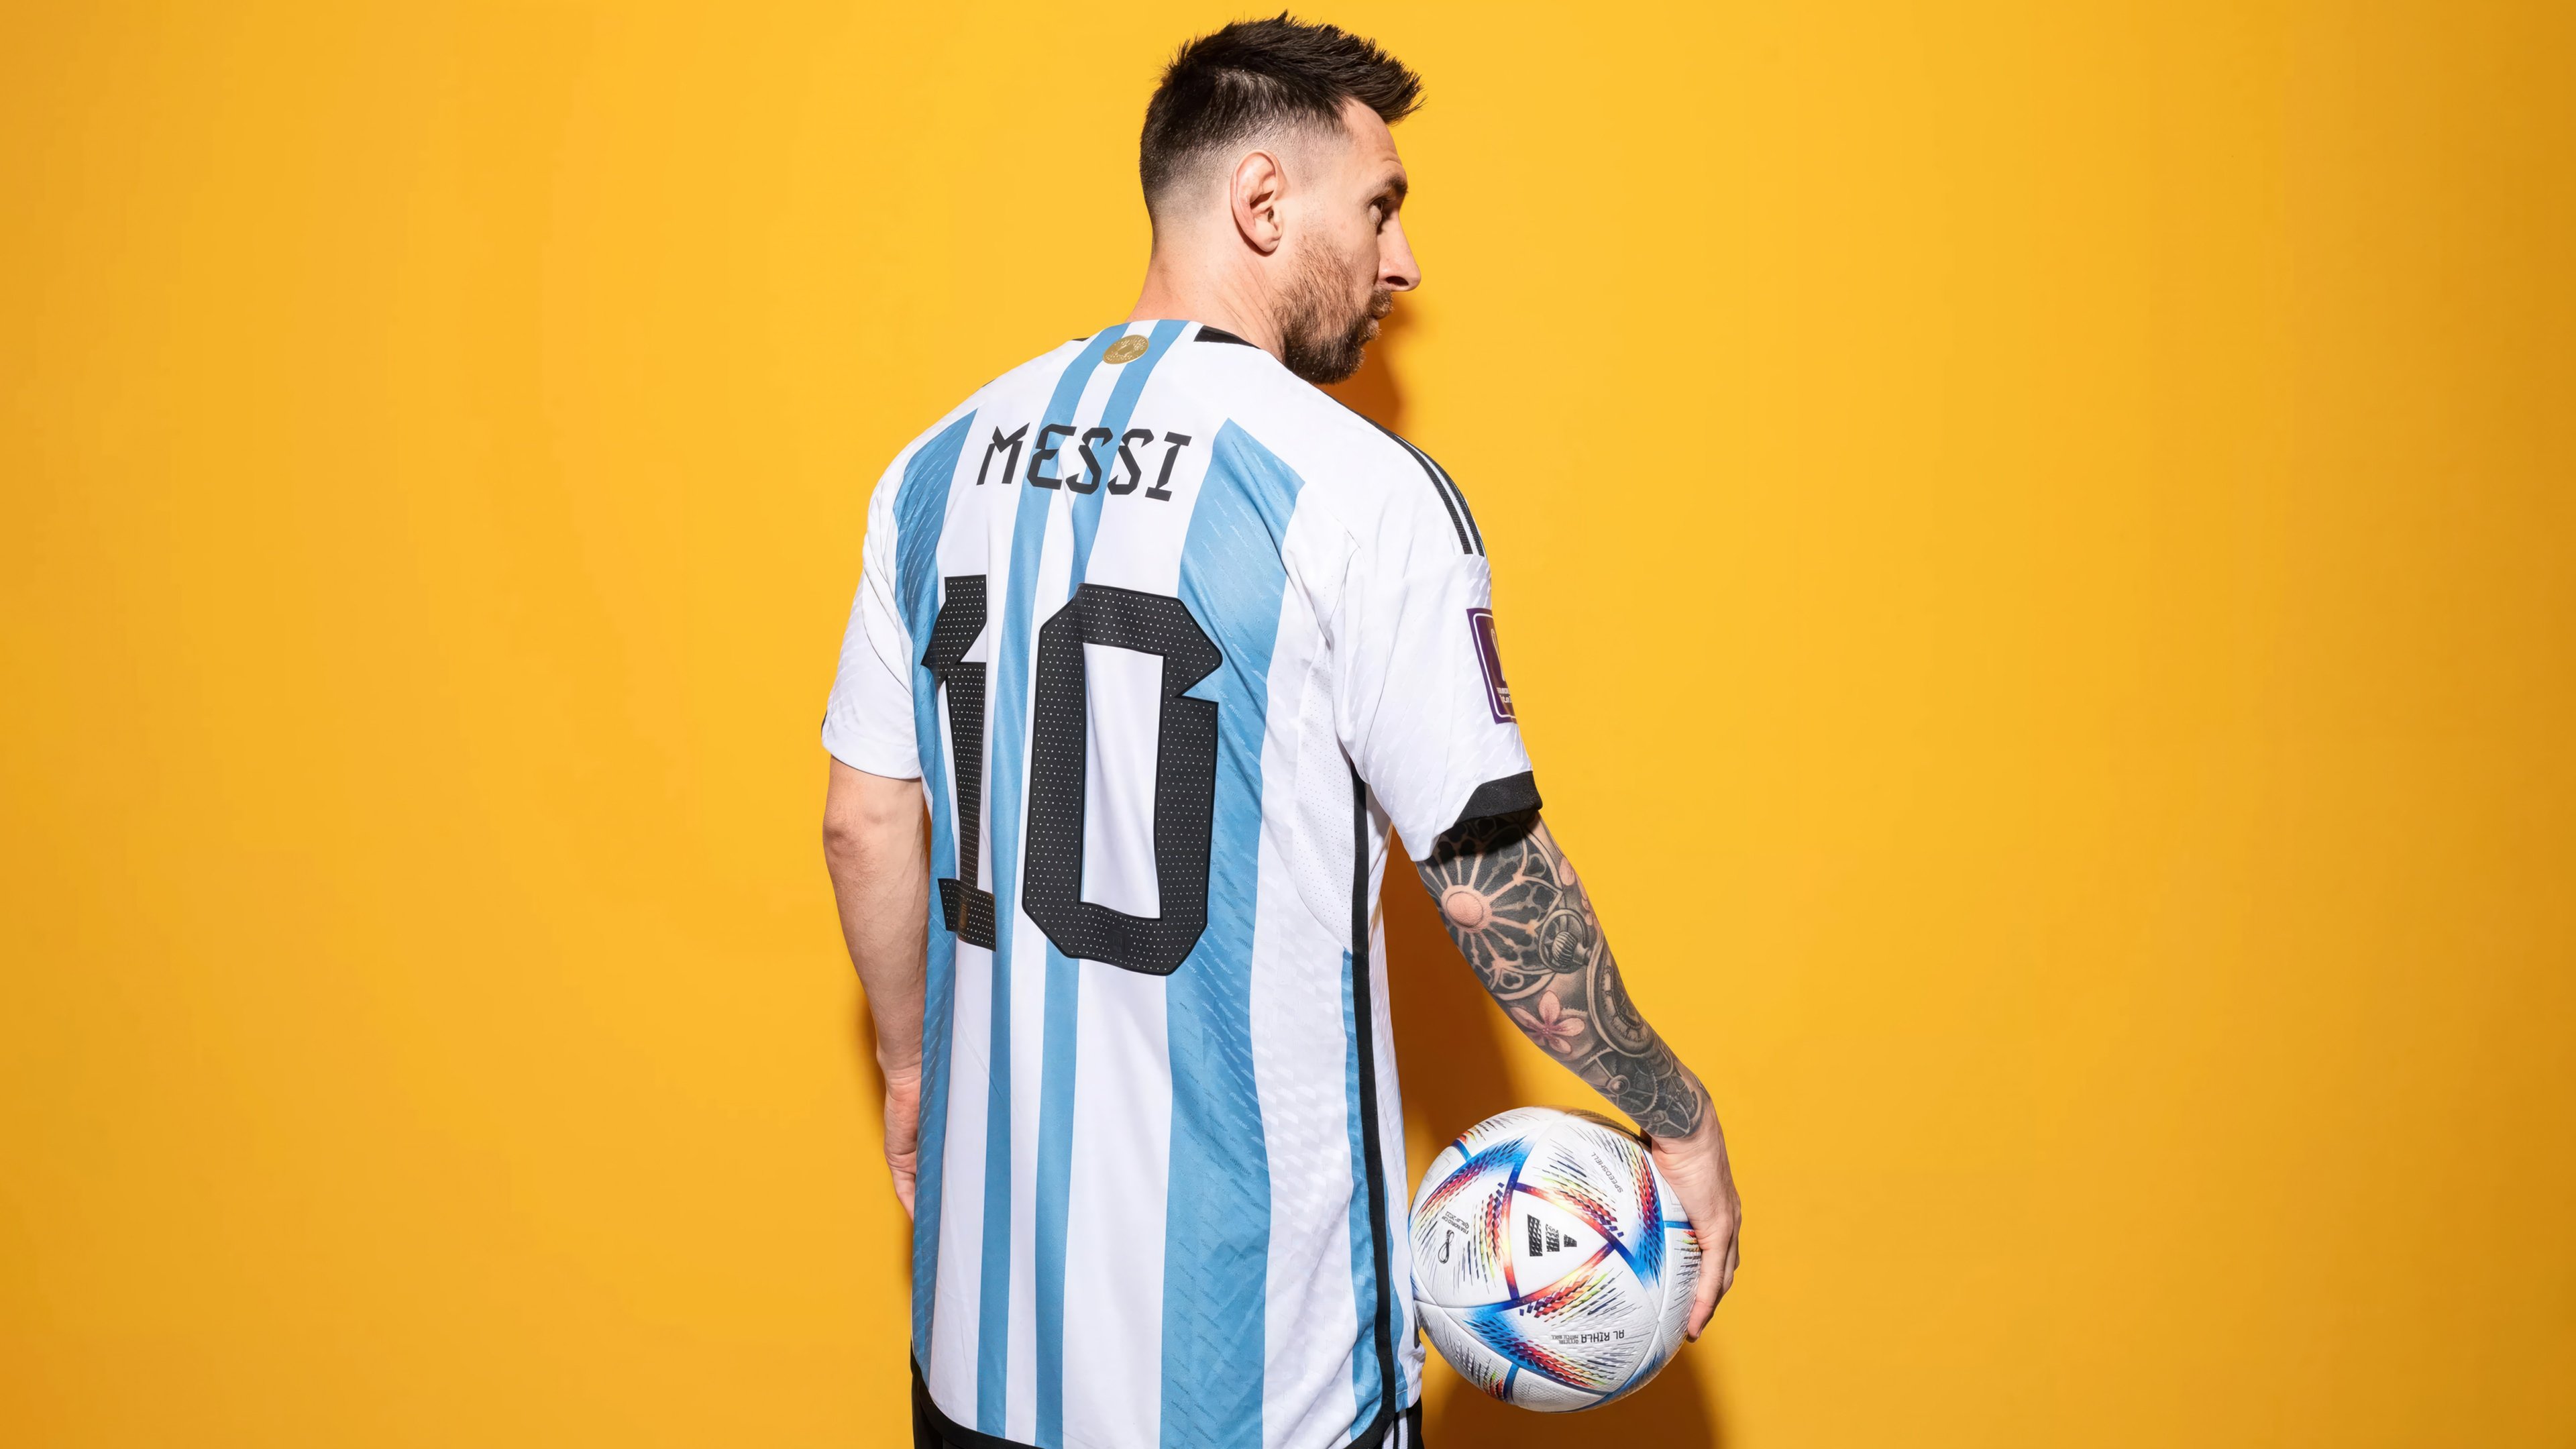 Fondos de pantalla Lionel Messi 10